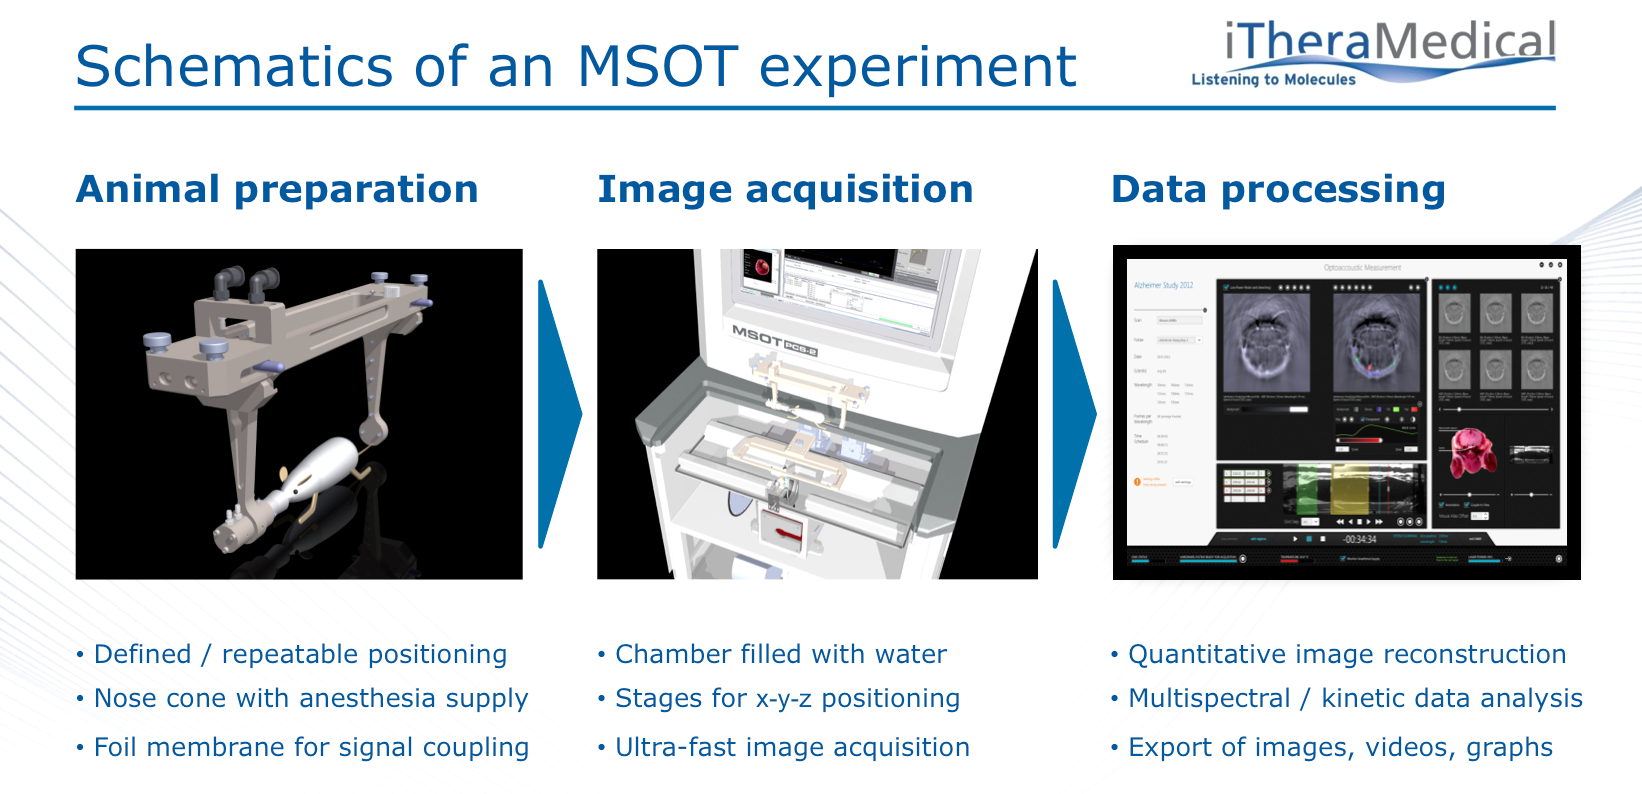 Schematics of an MSOT experiment